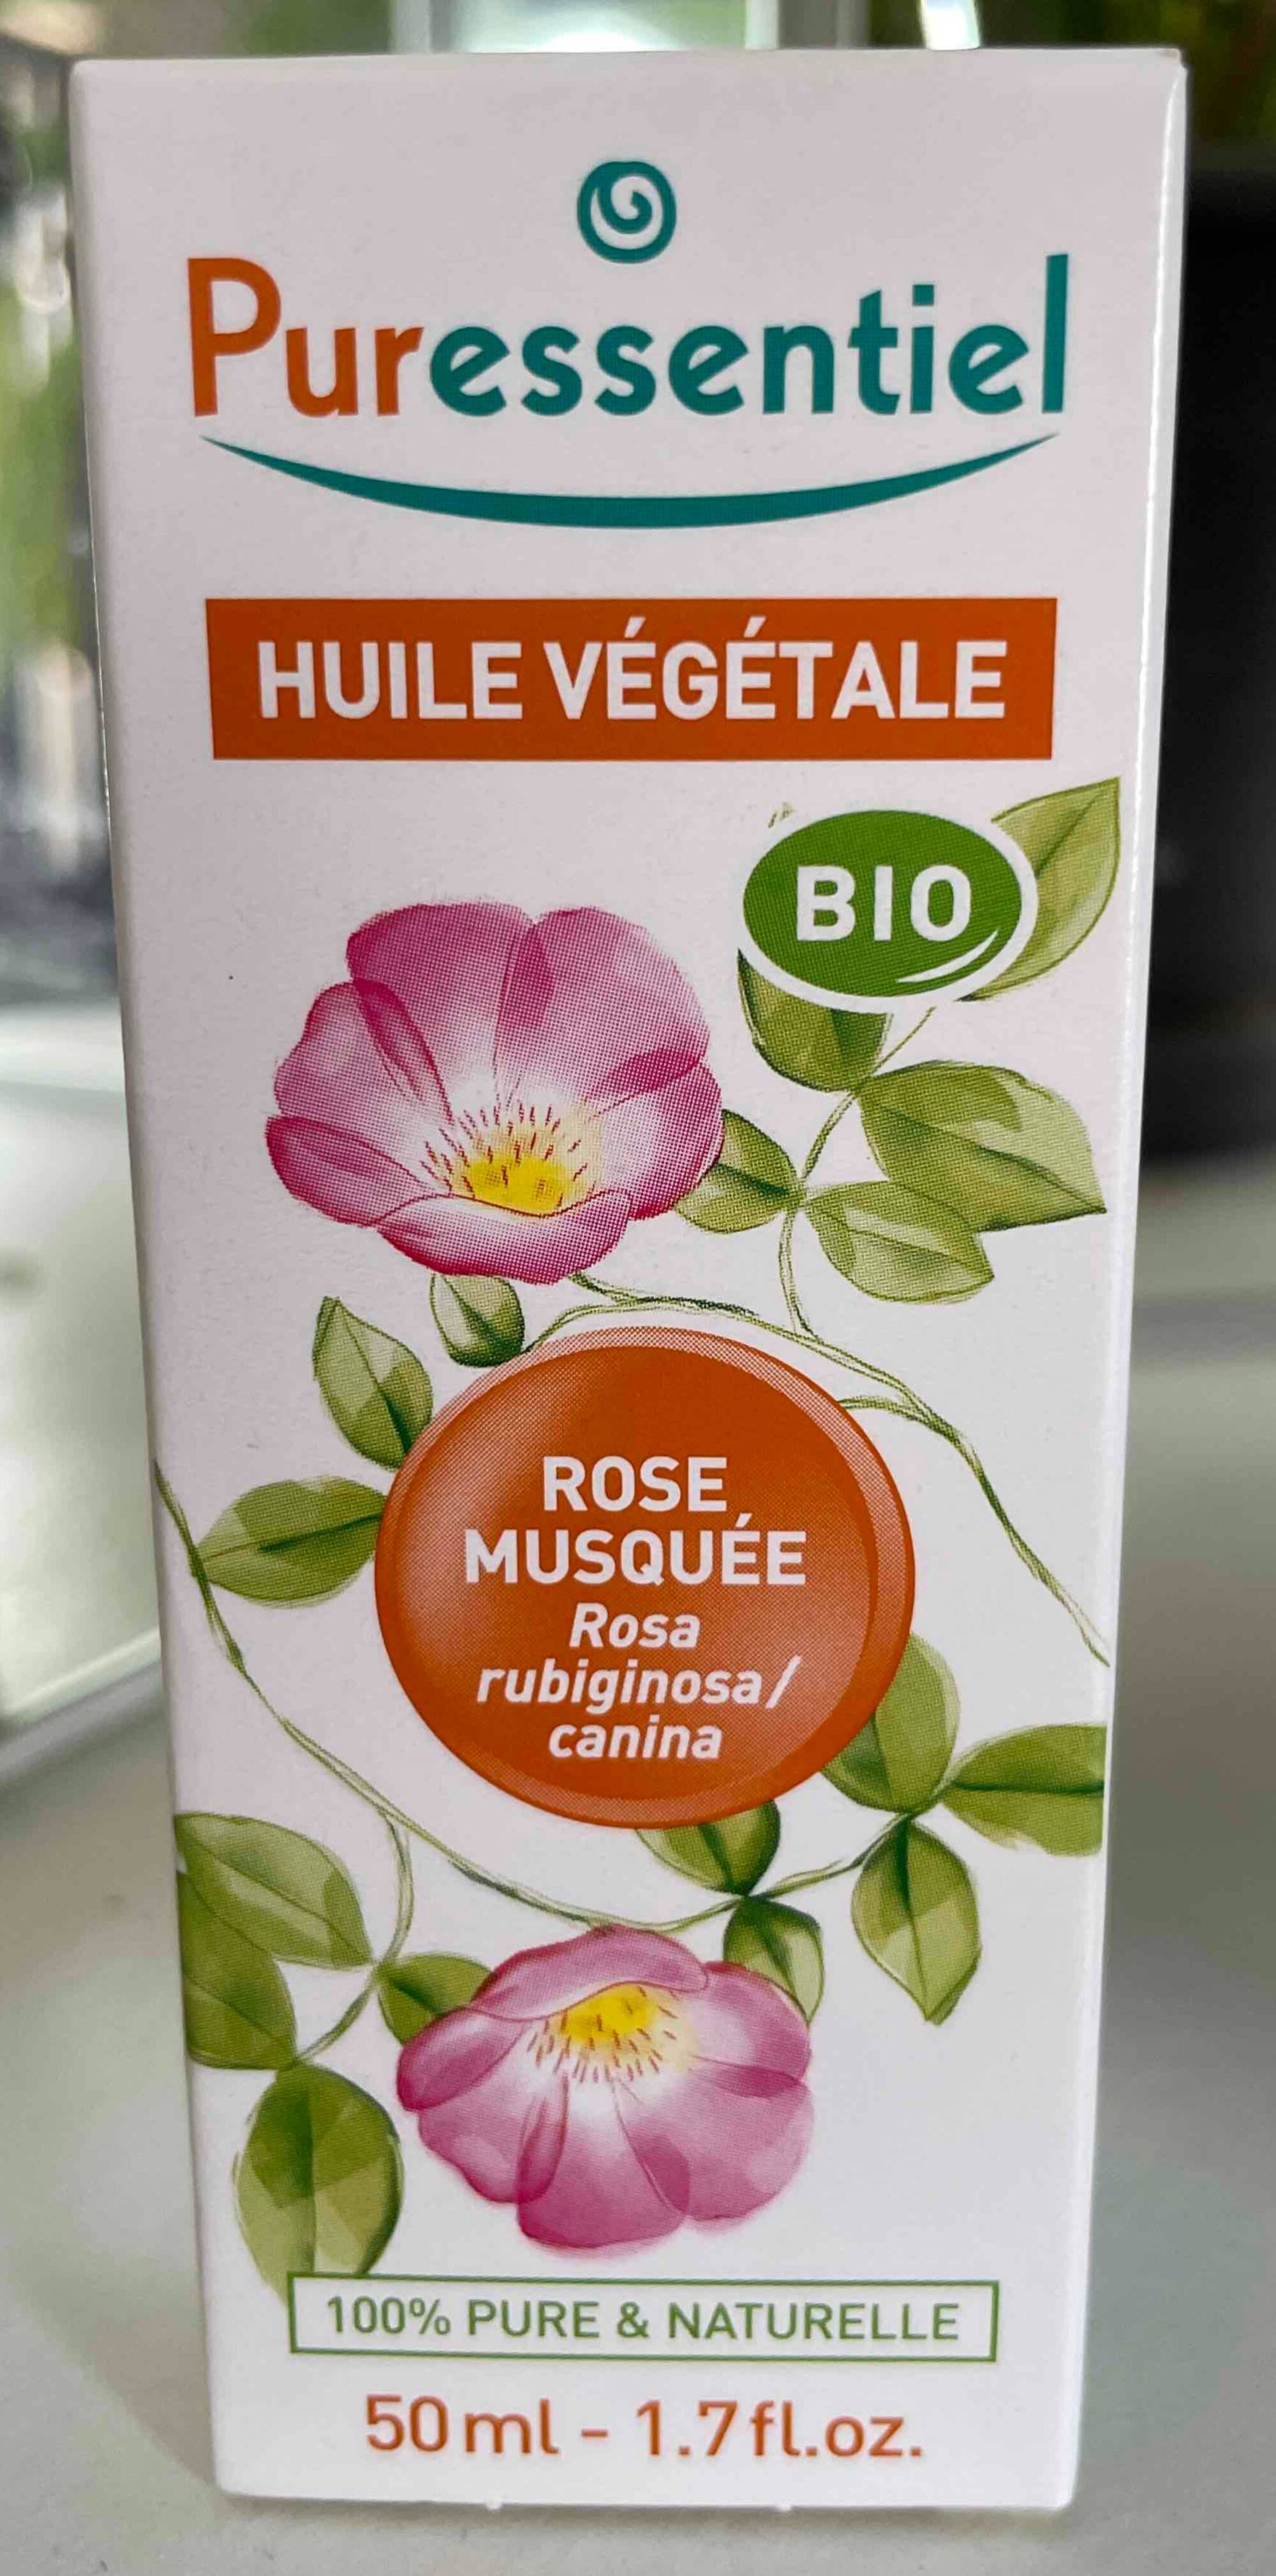 Puressentiel Huile Végétale Bio Rose Musquée 50ml